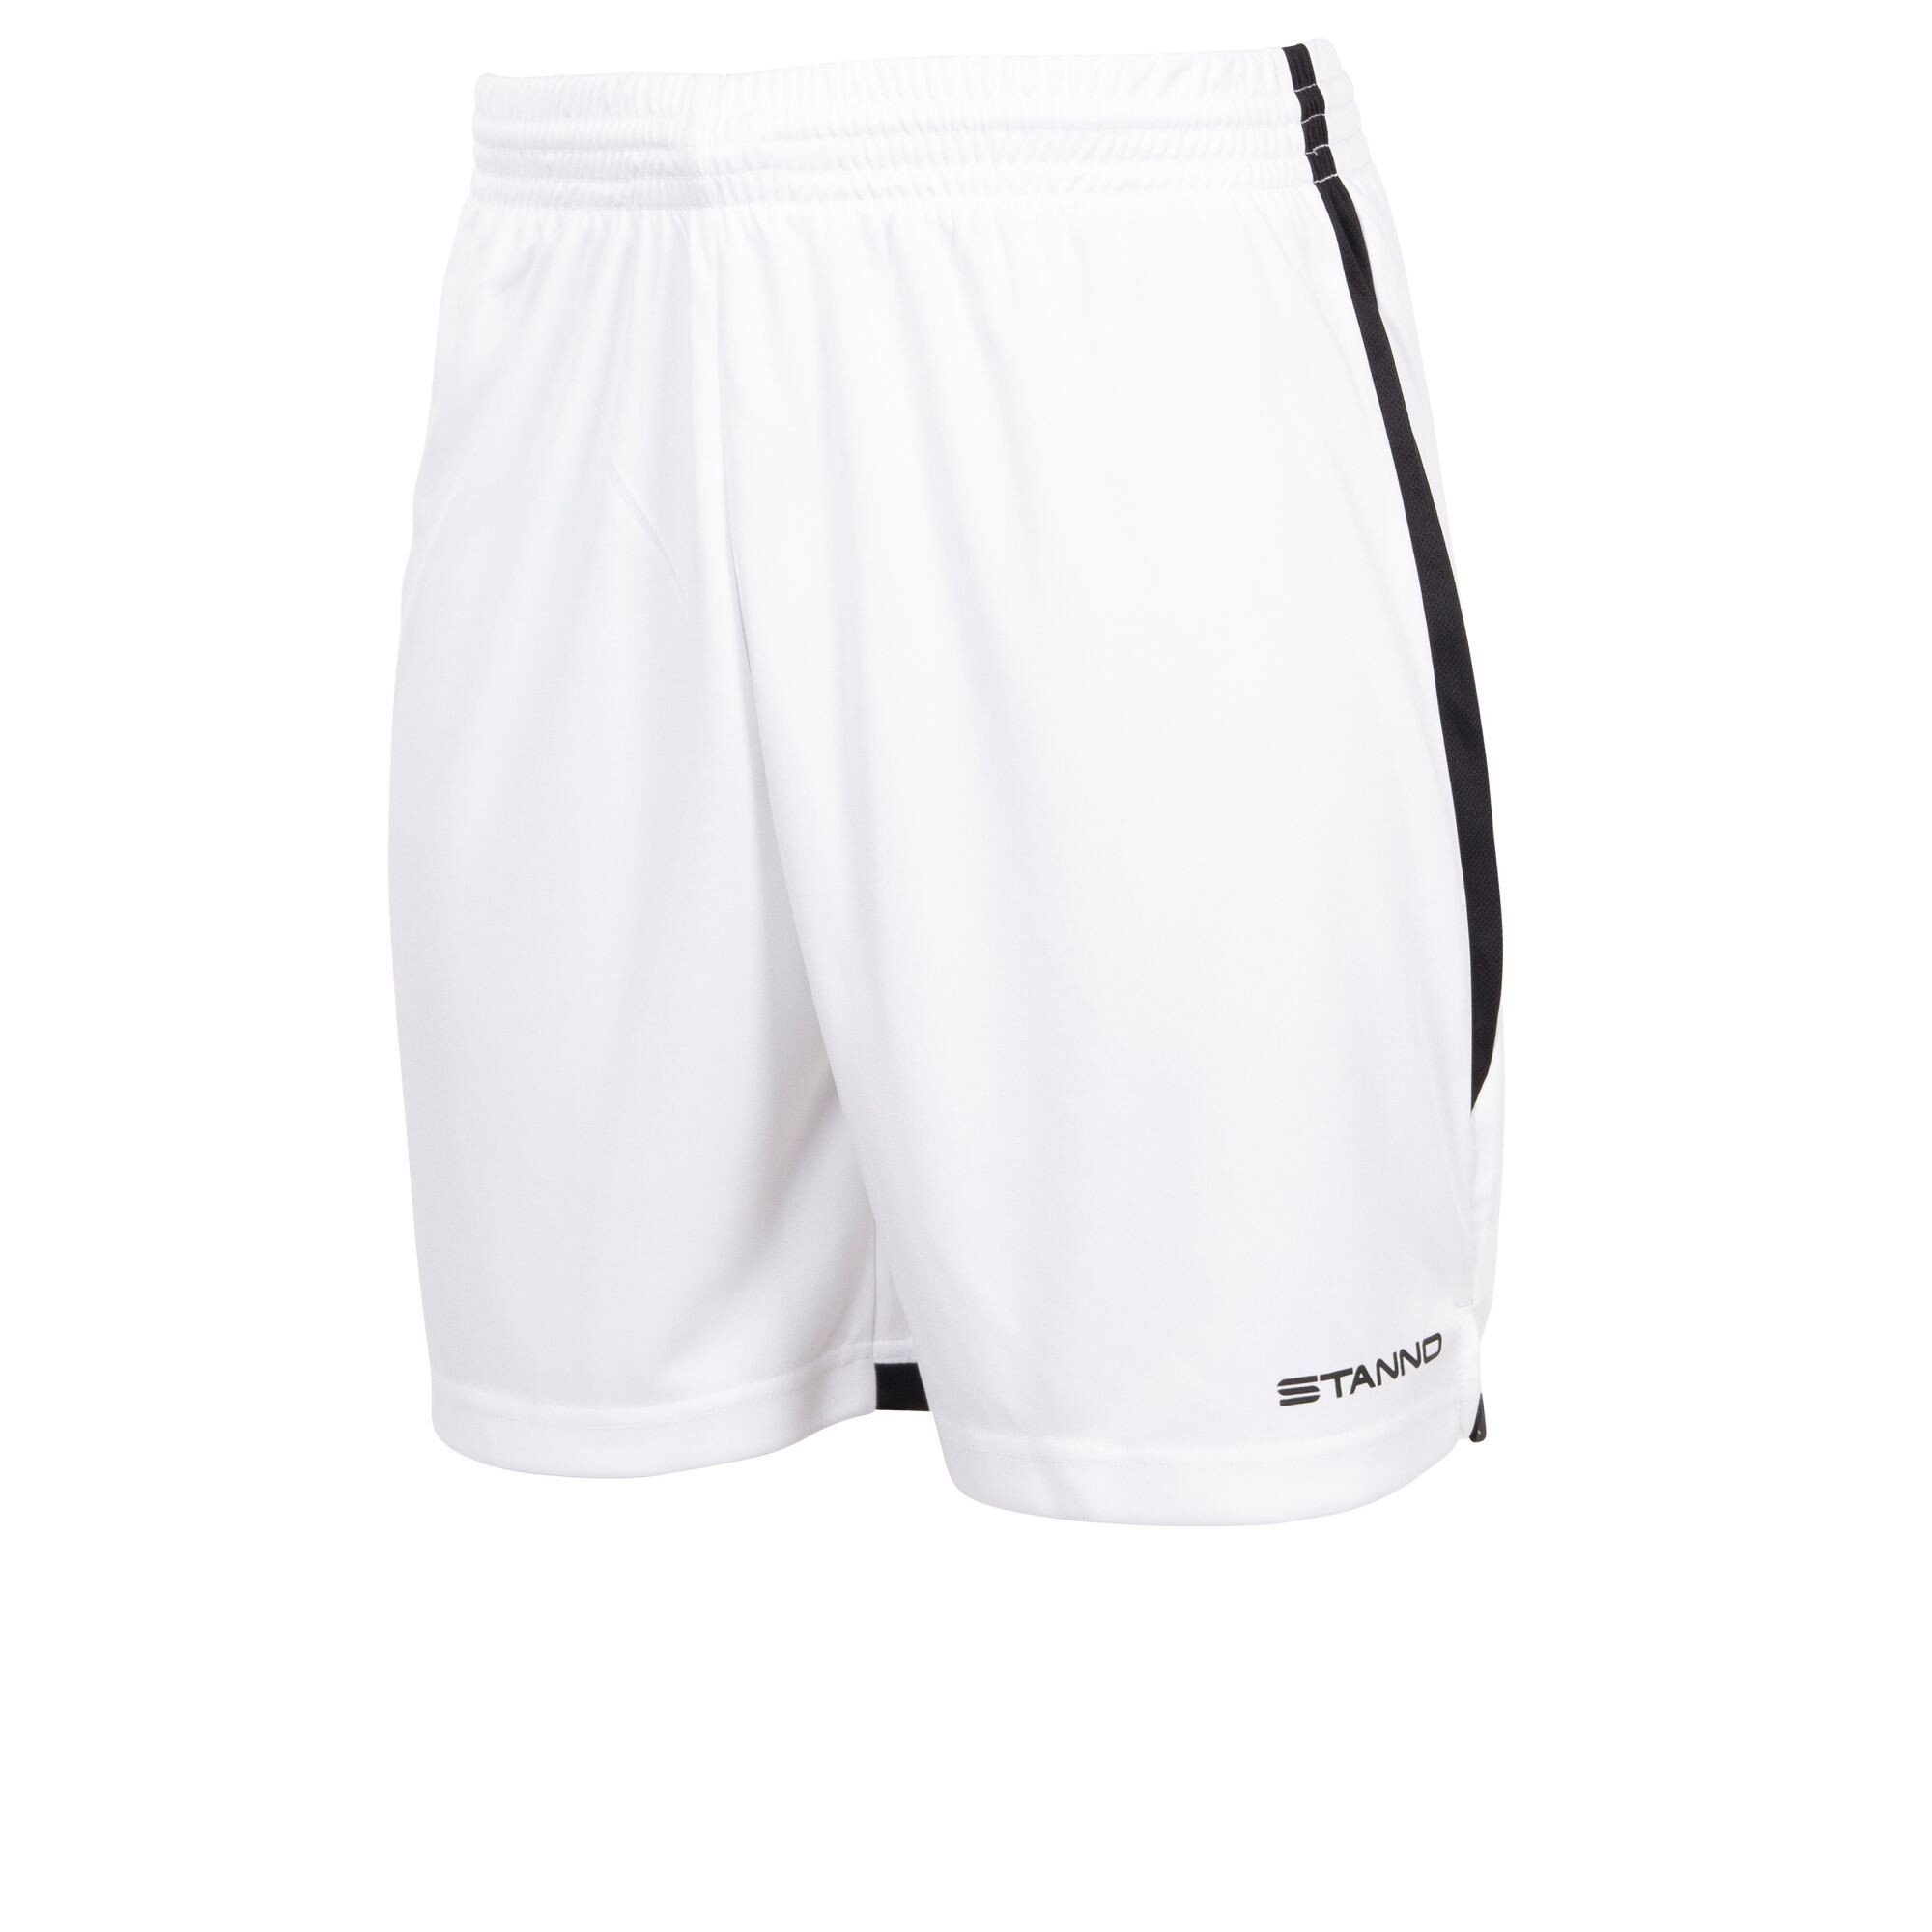 Athletic Shorts – Focus